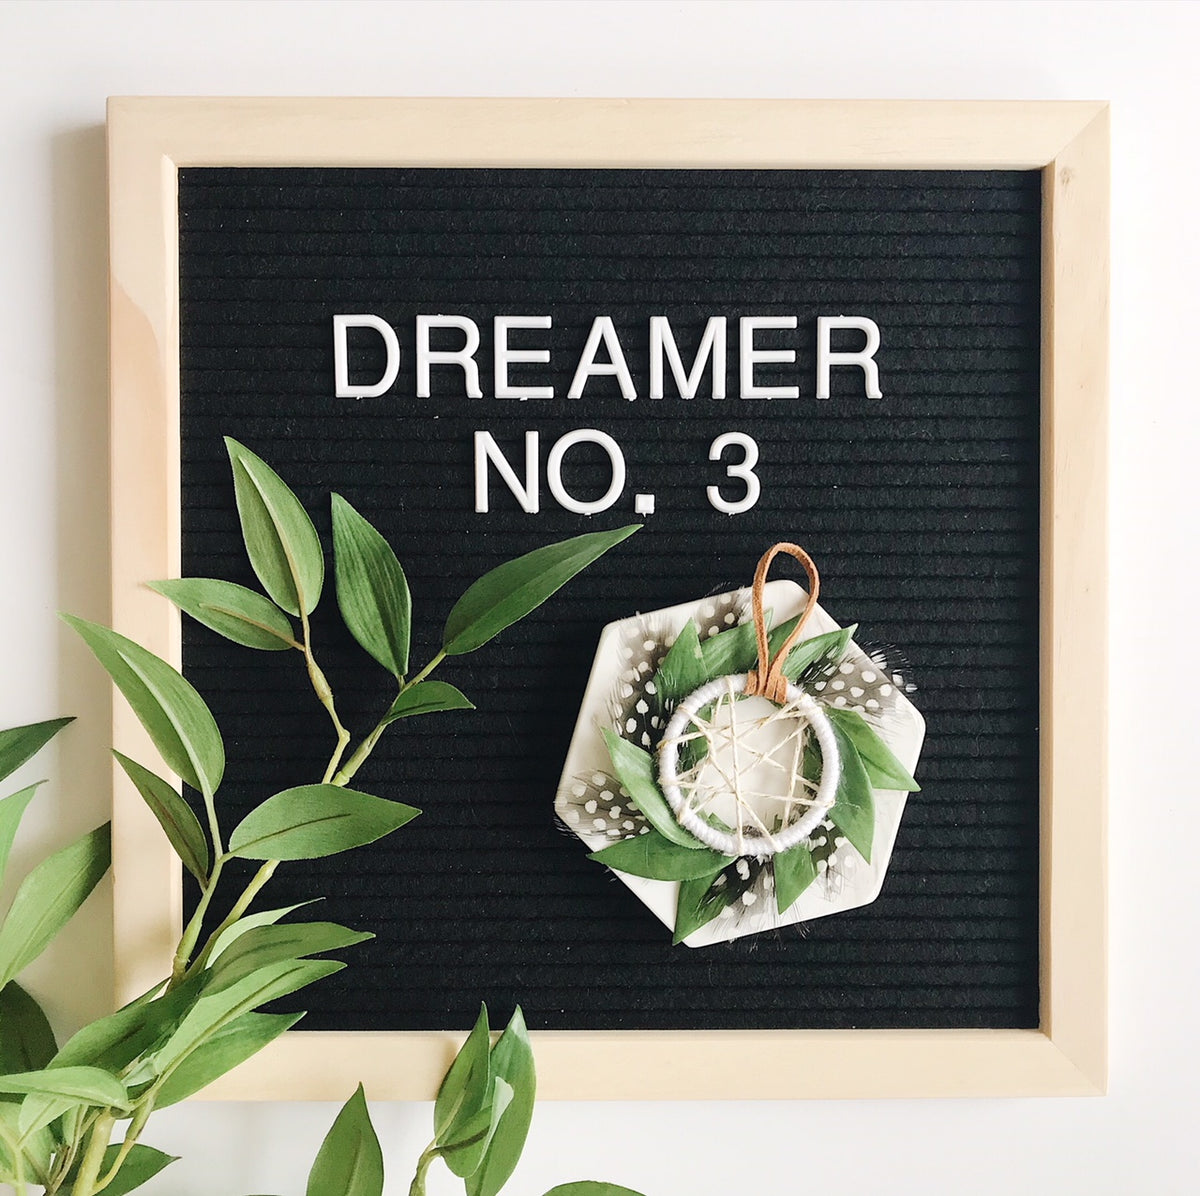 Dreamer No. 3 | 100 Days of Dreamers